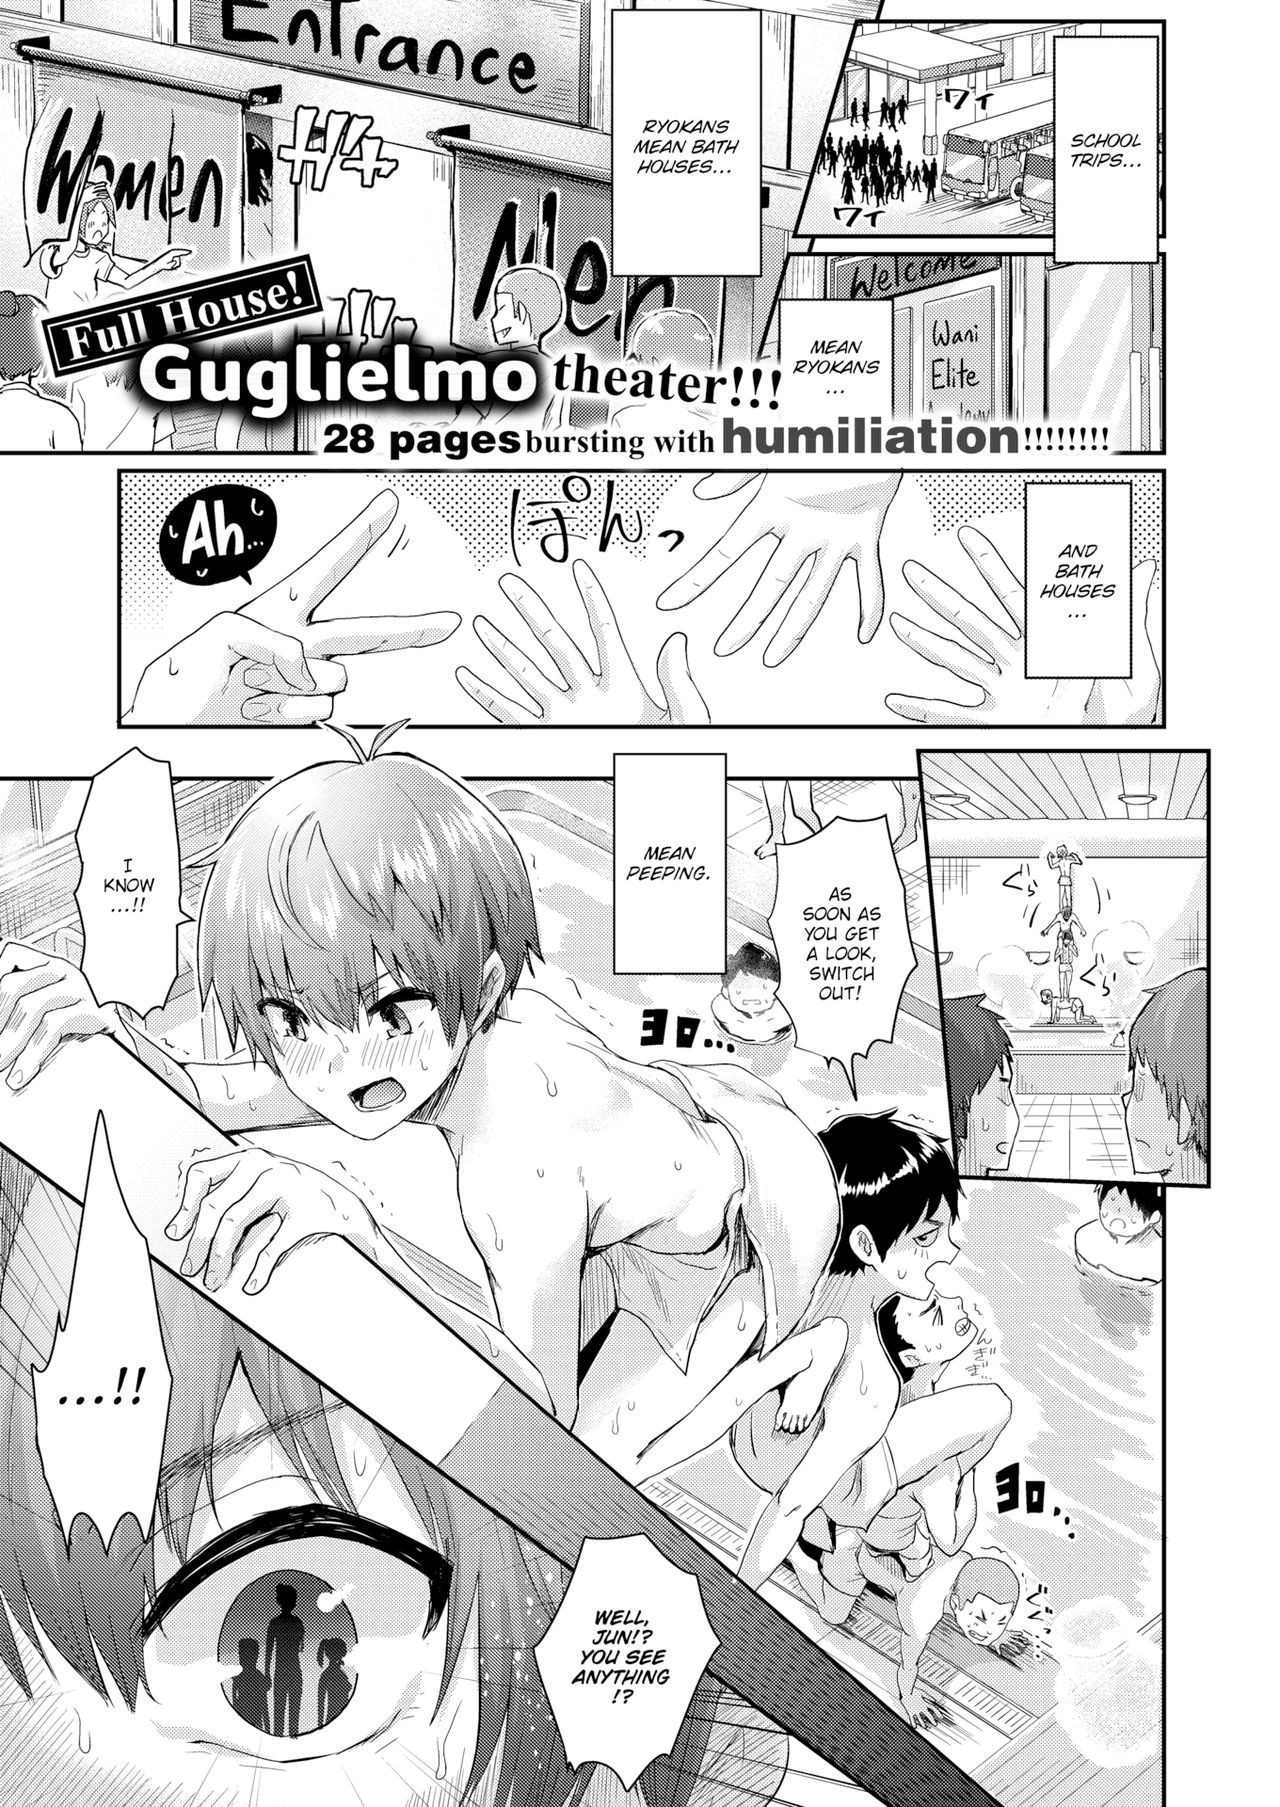 Misbehavior at the Bath House - Page 1 - 9hentai - Hentai Manga, Read Hentai,  Doujin Manga